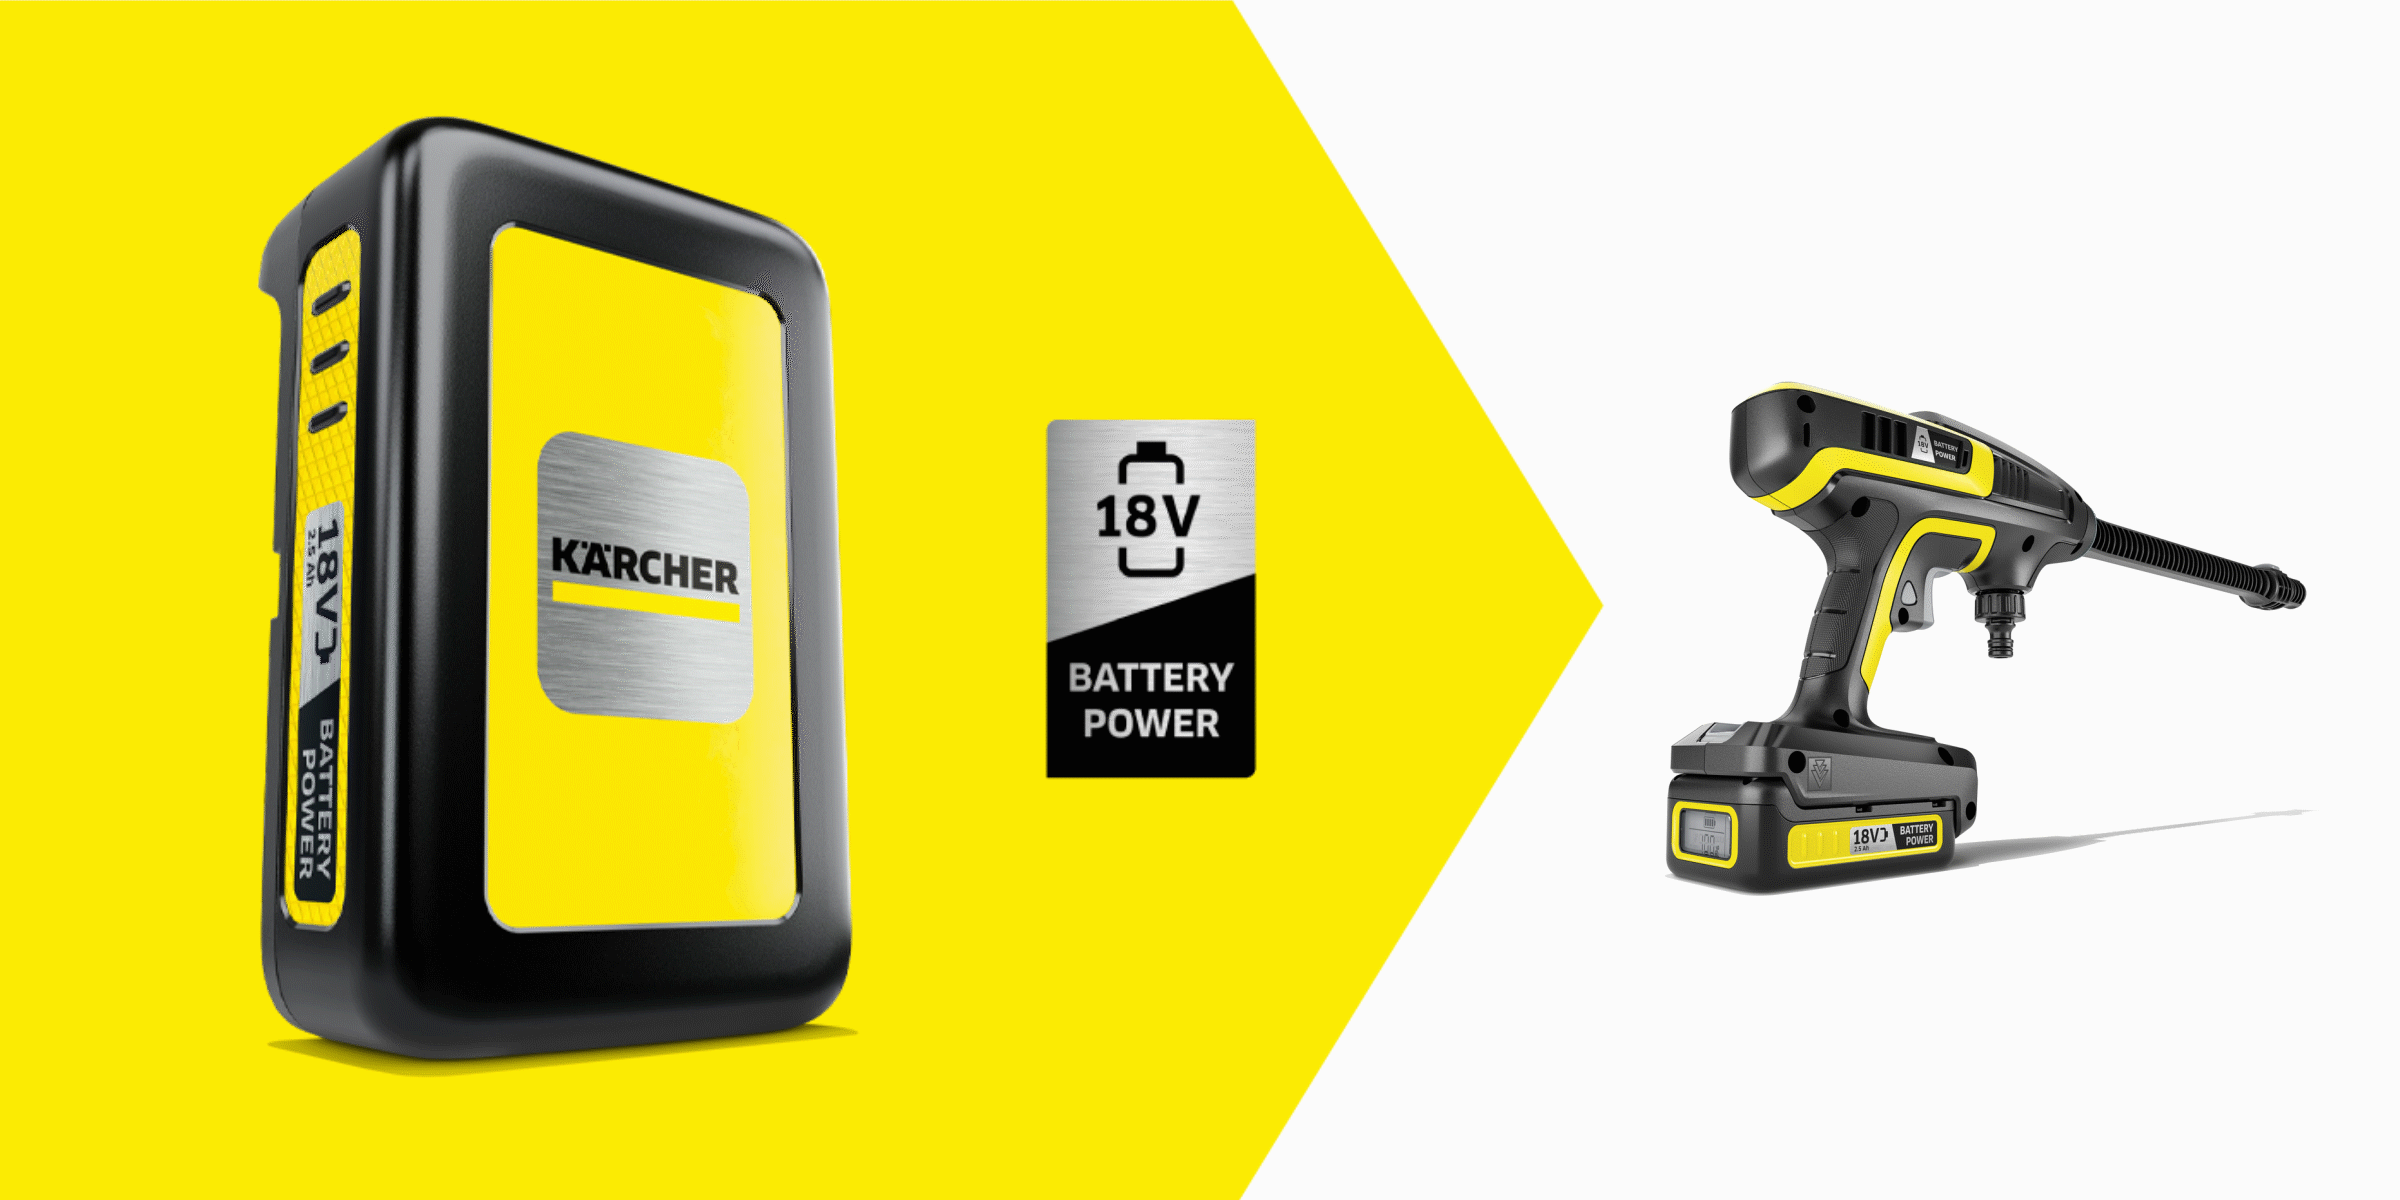 Karcher battery power. Карчер с батарейкой. Батарейка Karcher. Распылитель Керхер. Kärcher Battery Battery Power 18/25 аккумулятор.